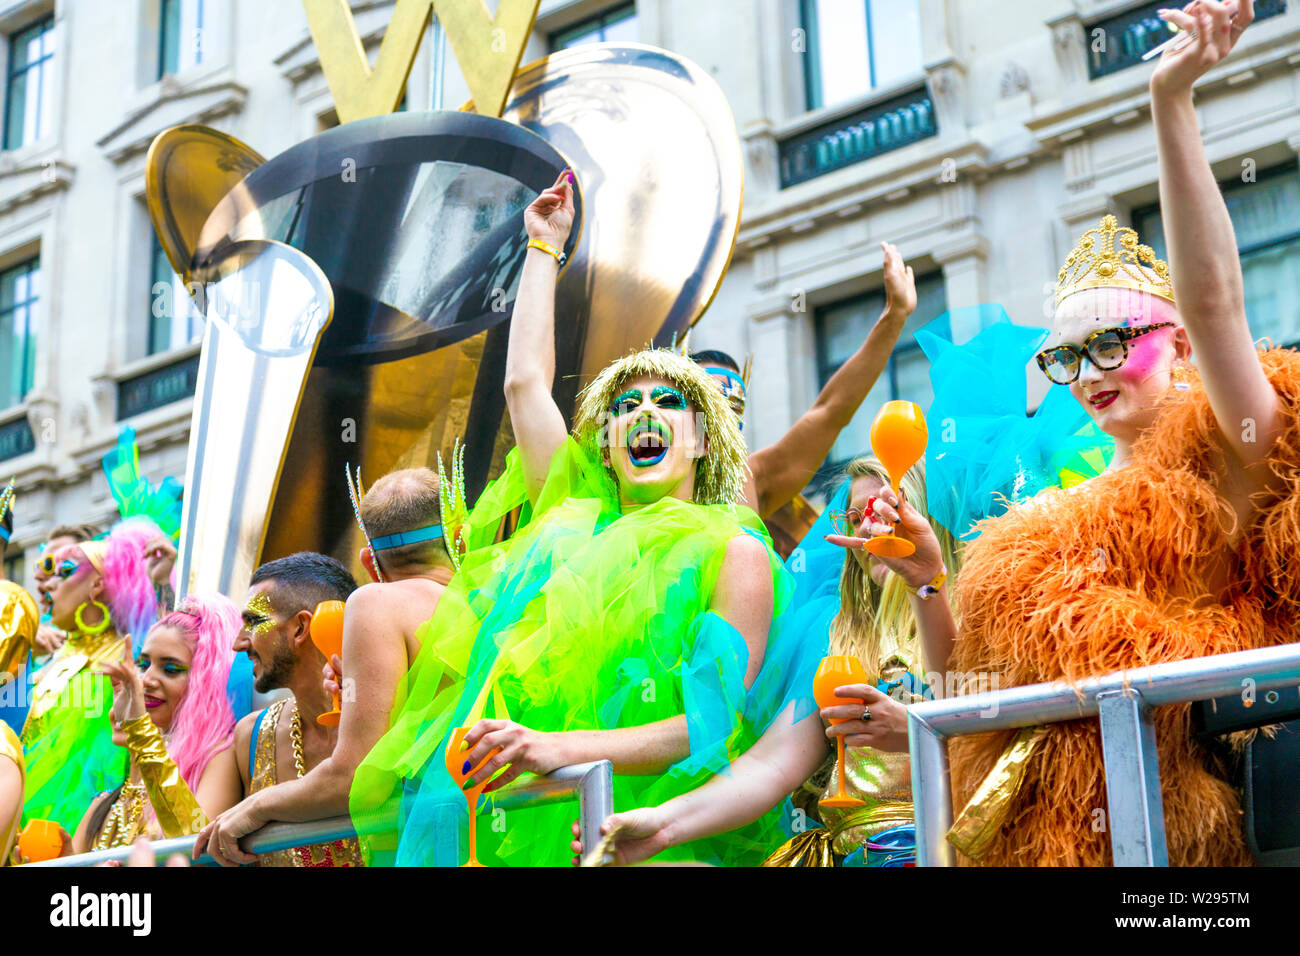 Vom 6. Juli 2019 - gekleidete Menschen feiern auf einen Schwimmer, London Pride Parade, Großbritannien Stockfoto